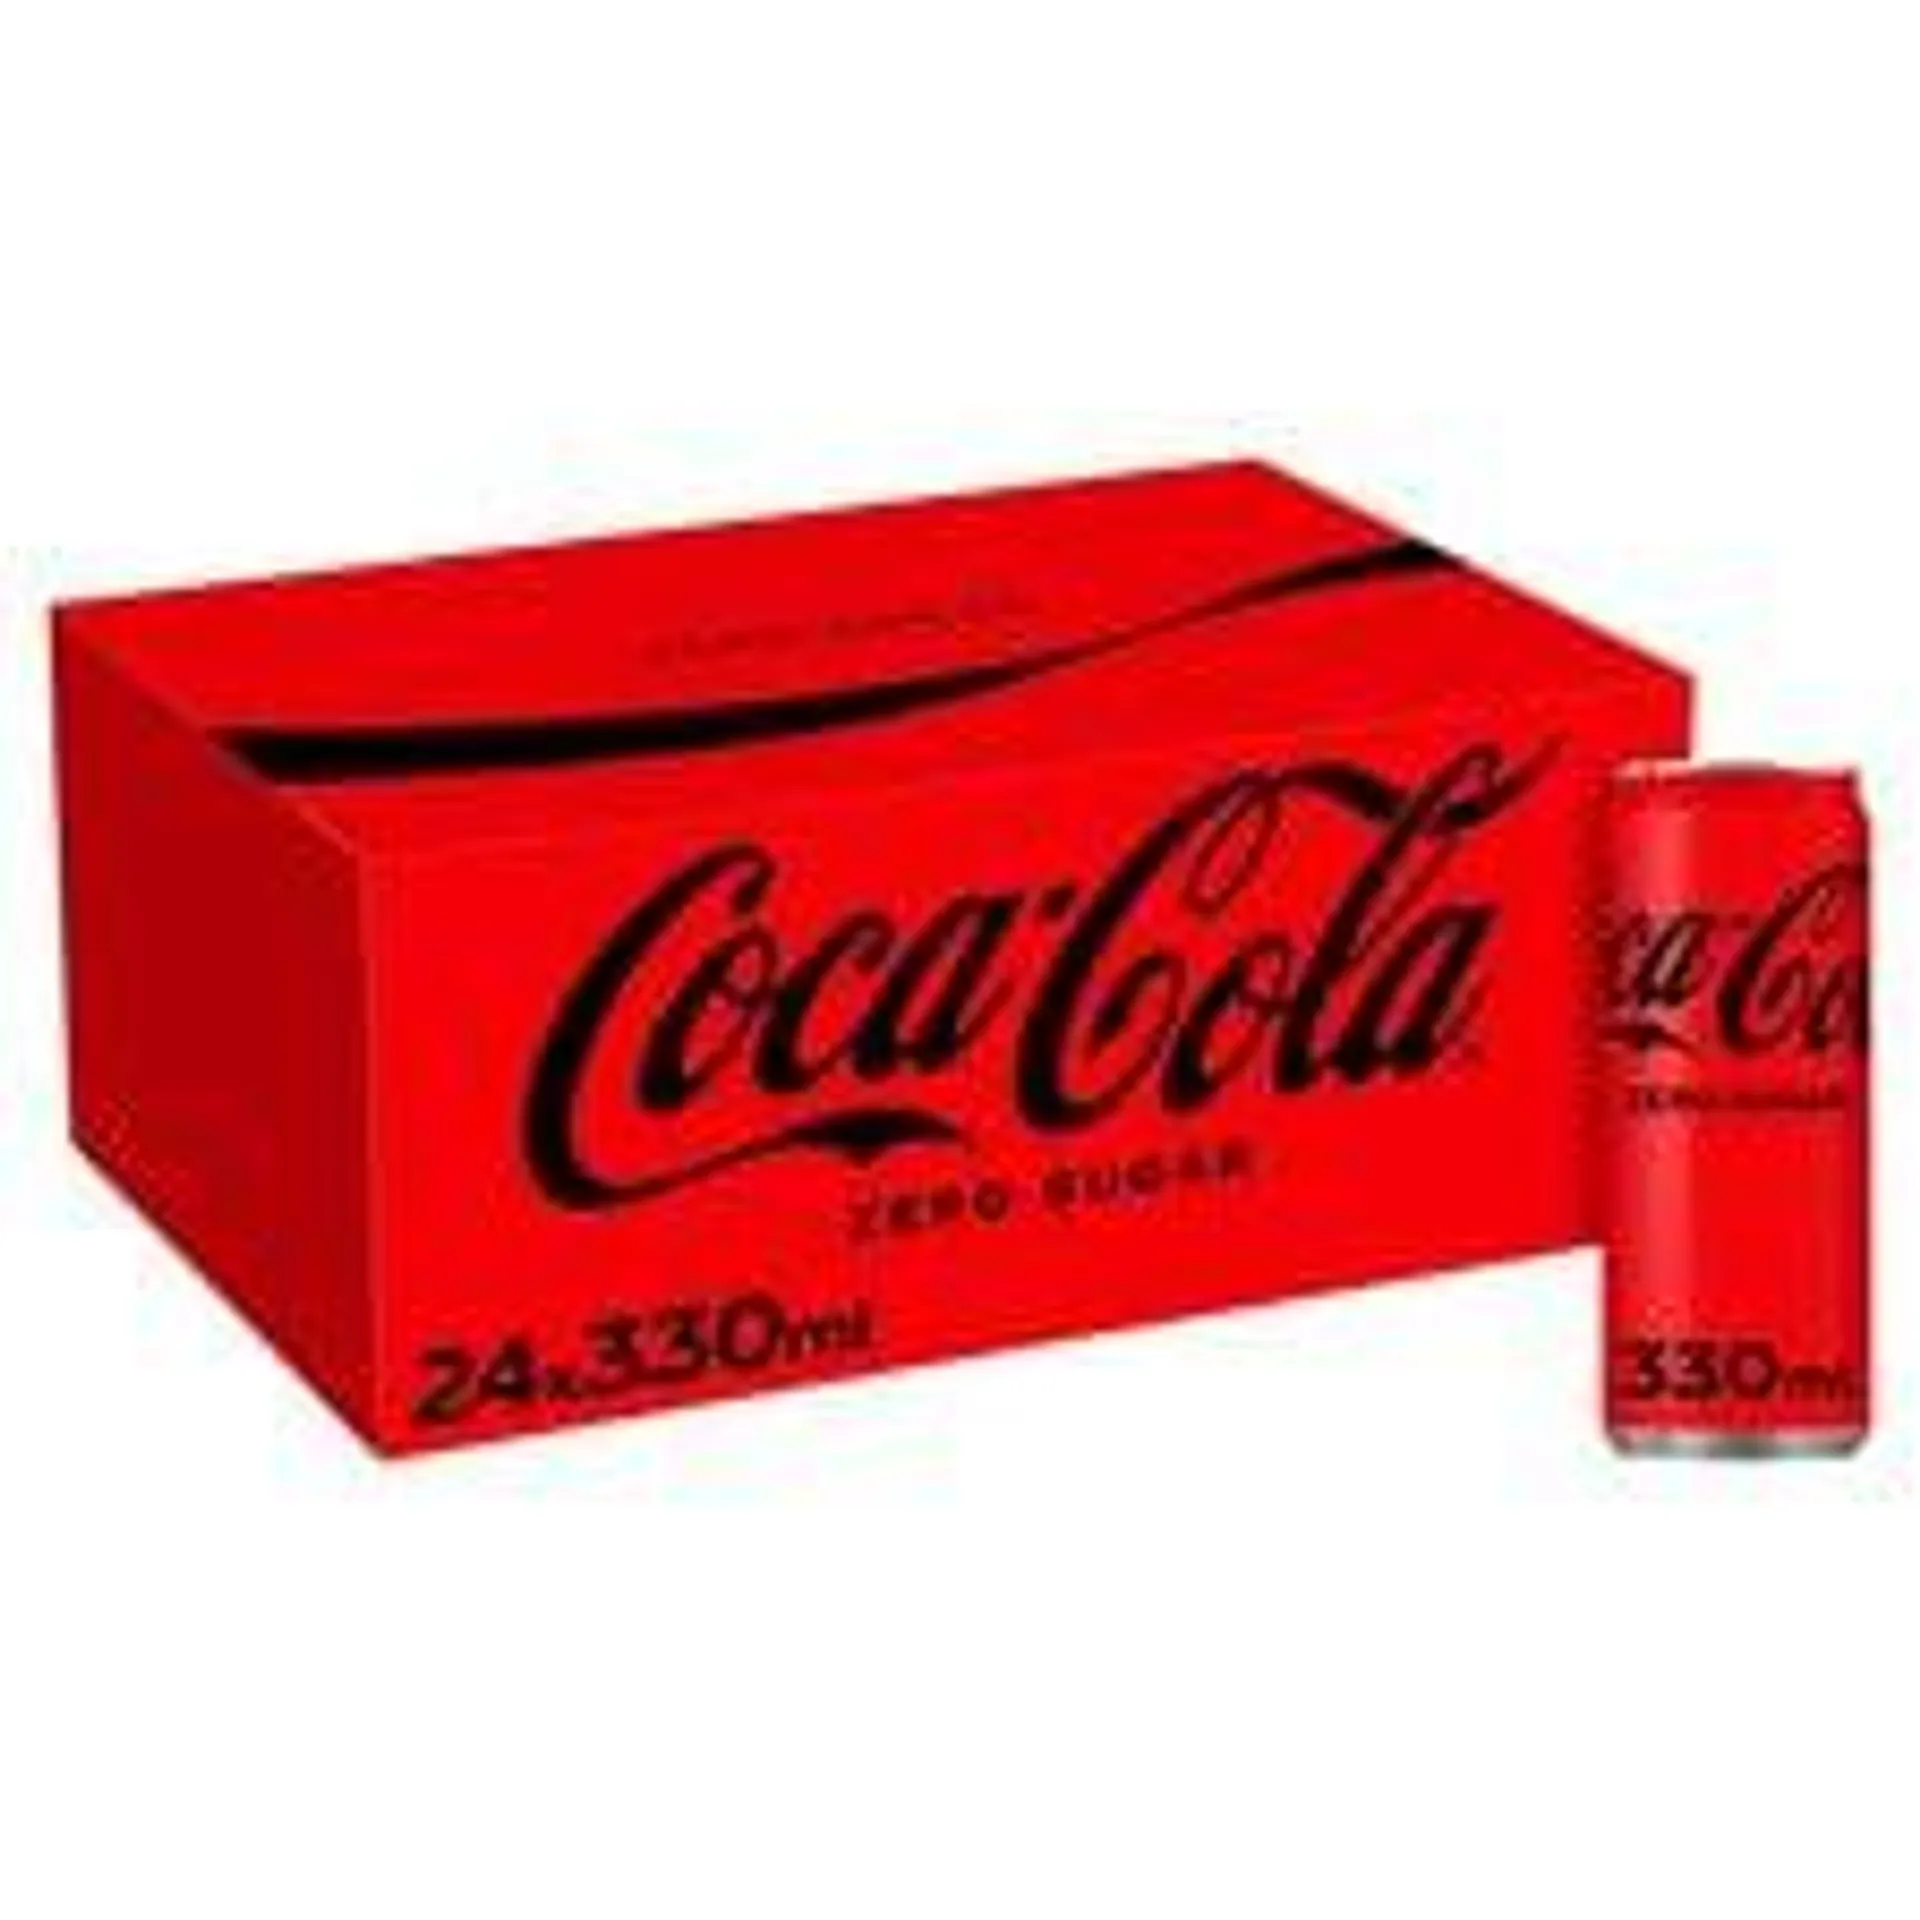 Coca-Cola Zero Sugar 24x330ml